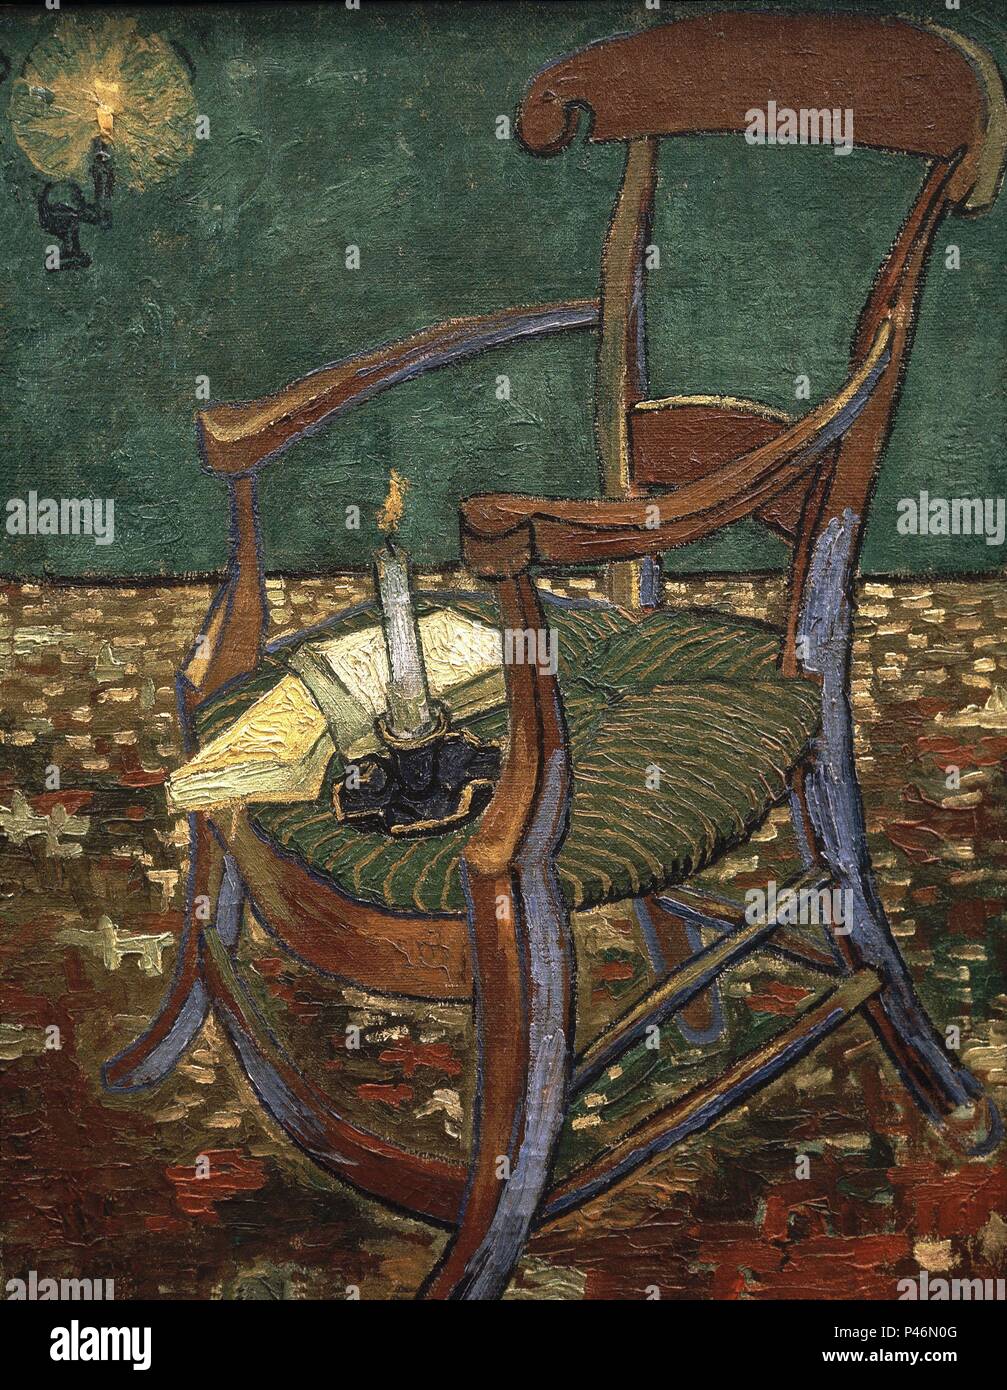 Niederländische Schule. Paul Gauguin Sessel. 1888. Öl auf Leinwand (90,5 x 72,5 cm). Amsterdam, Van Gogh Museum. Autor: Vincent van Gogh (1853-1890). Ort: Van Gogh Museum, Amsterdam, HOLANDA. Stockfoto